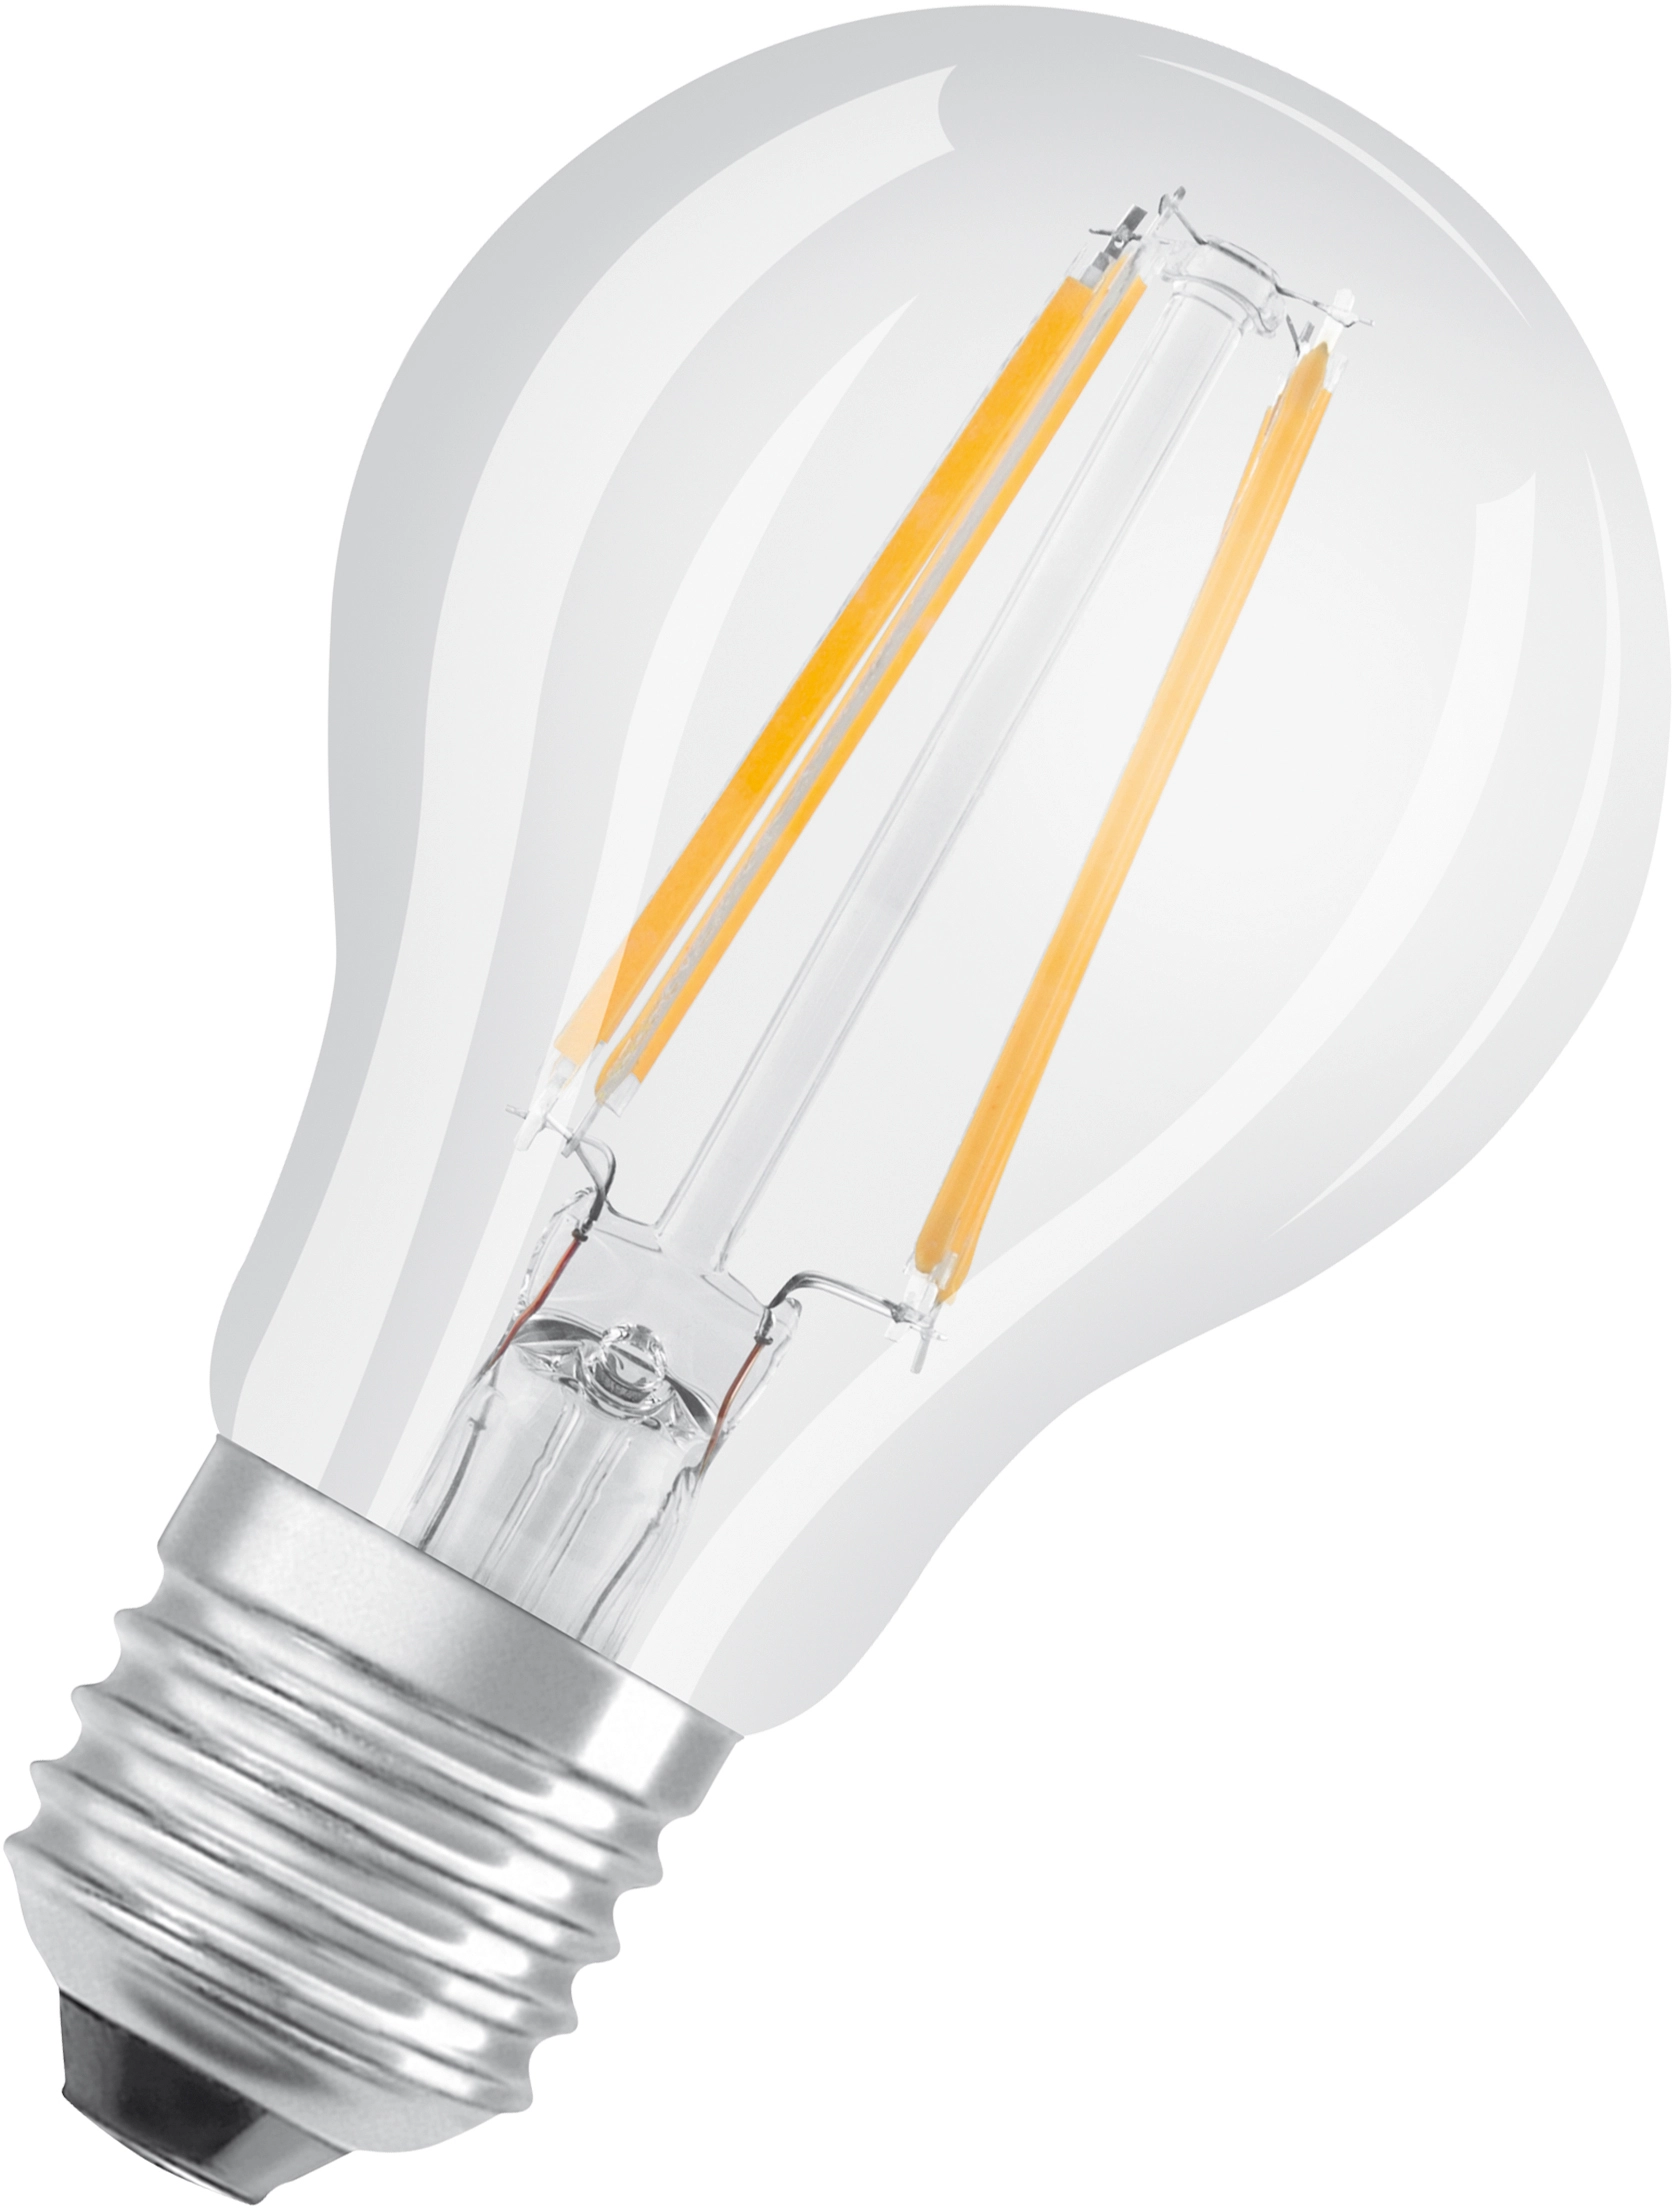 Lampadina LED Filament E27 7 Watt Classica (760 lumen)